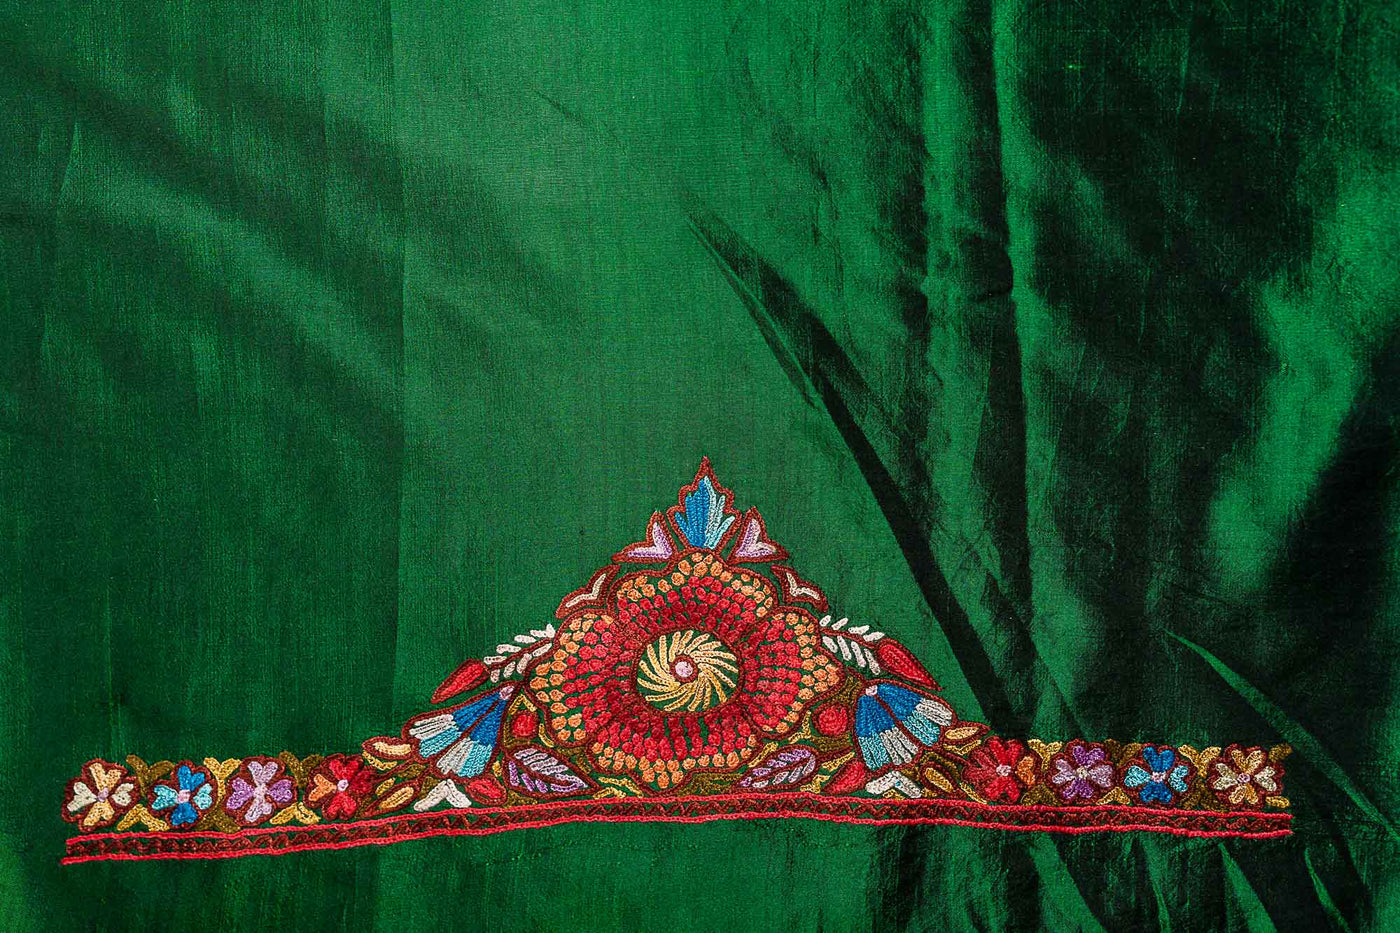 Artisanal Elegance: KashmKari's Hand-Aari Embroidered Pure Silk Suit